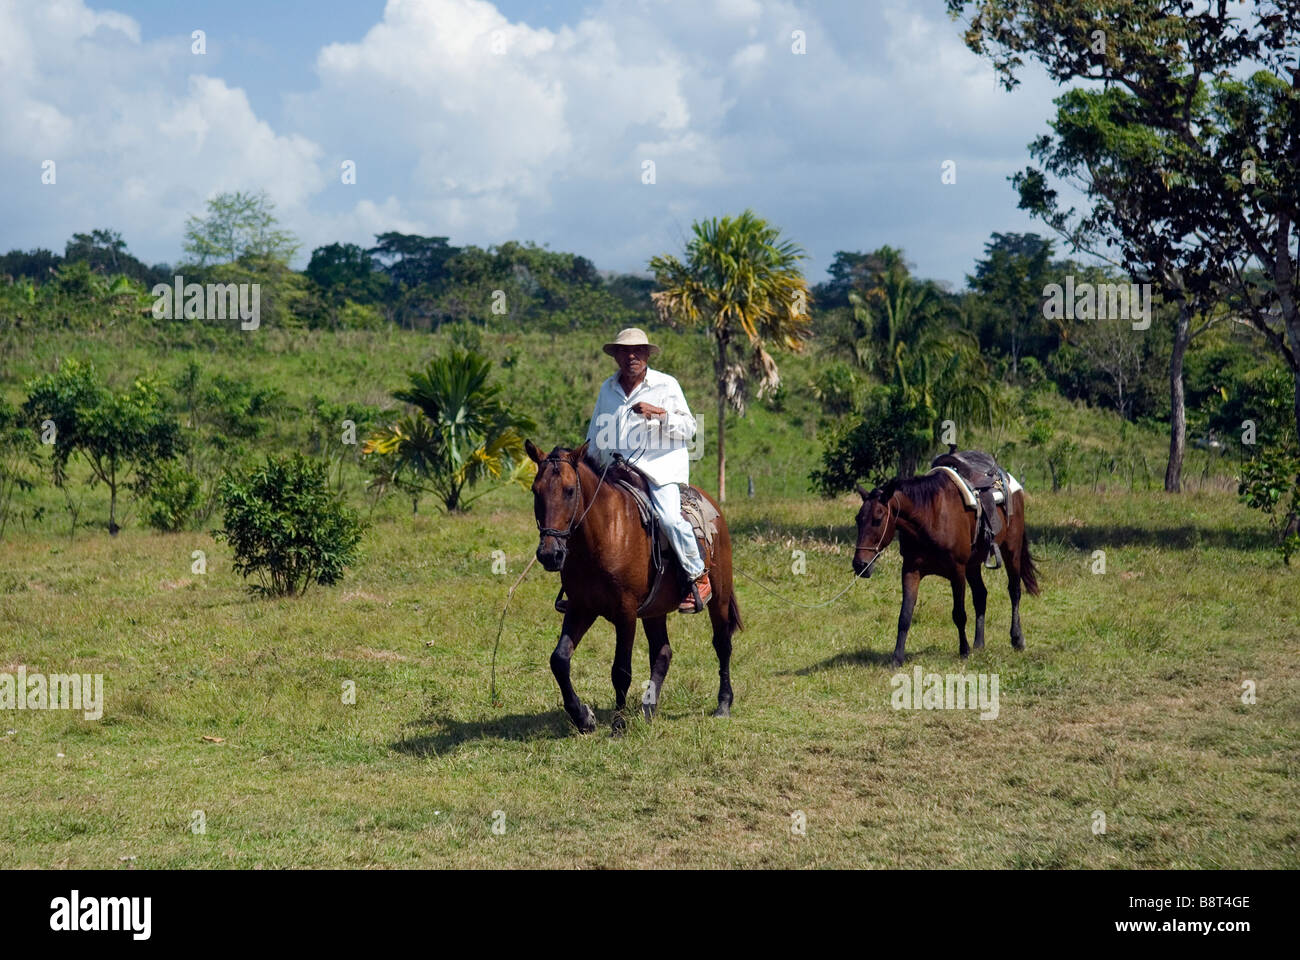 Colono settlers in Panama's Darien region Stock Photo